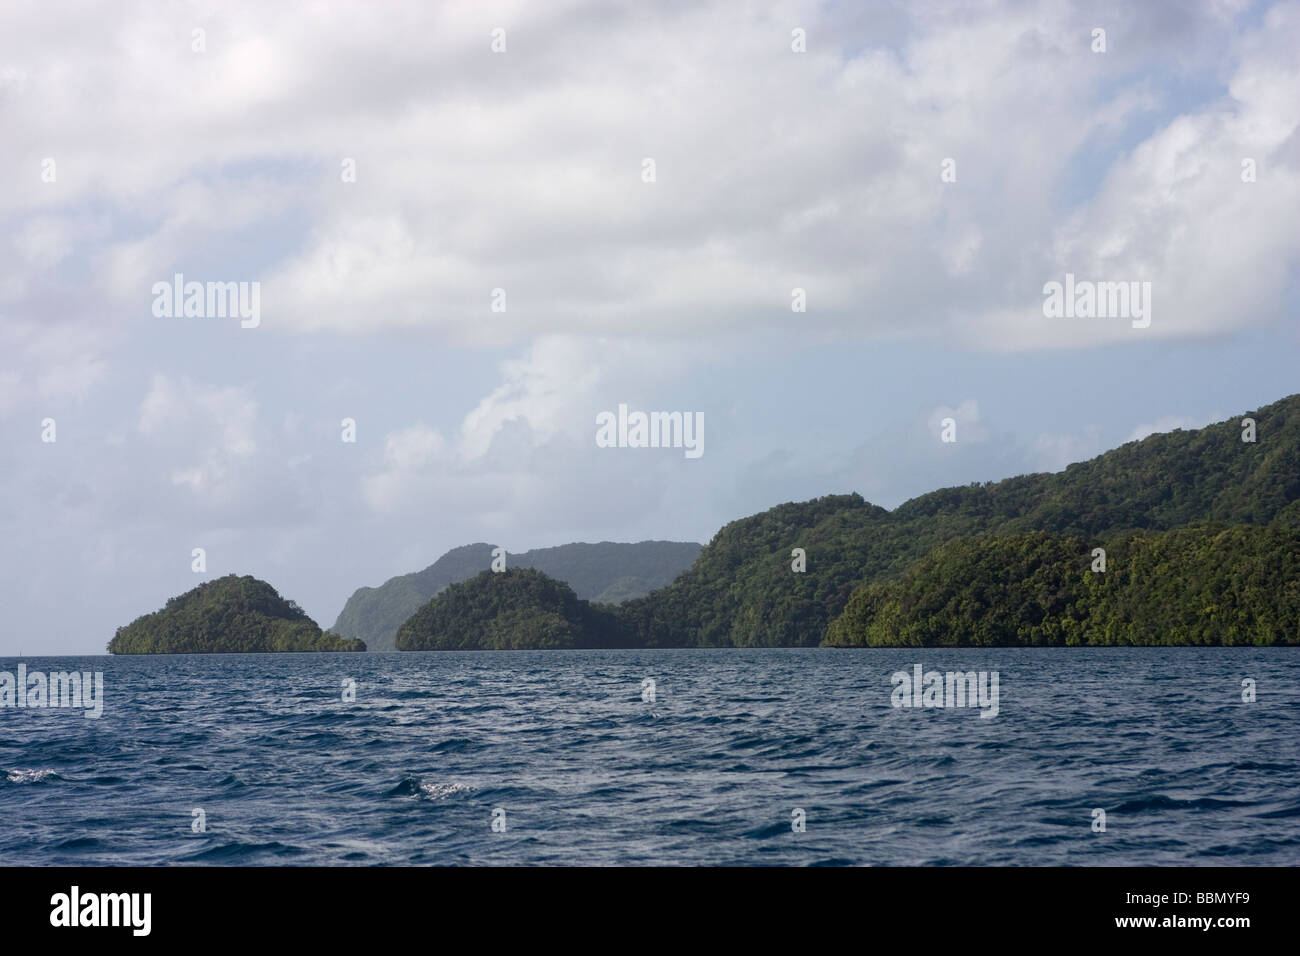 La isla de Palau, Micronesia Foto de stock